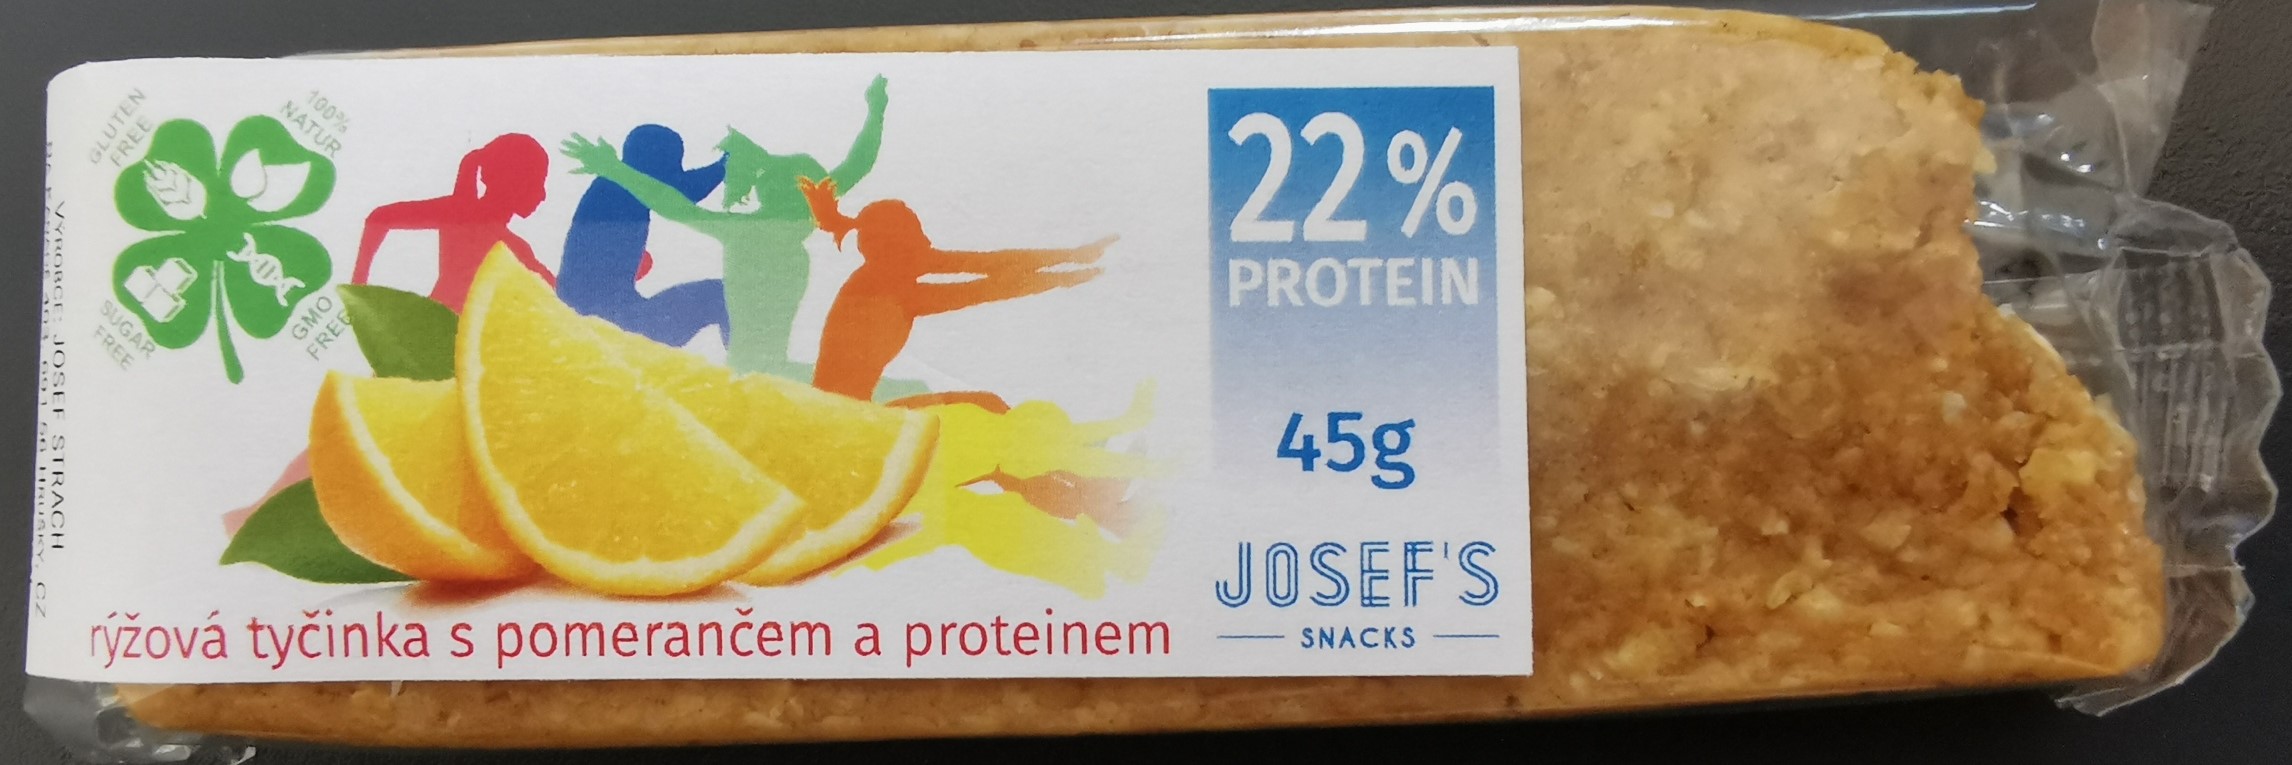 Proteinová tyčinka s pomerančem 45g